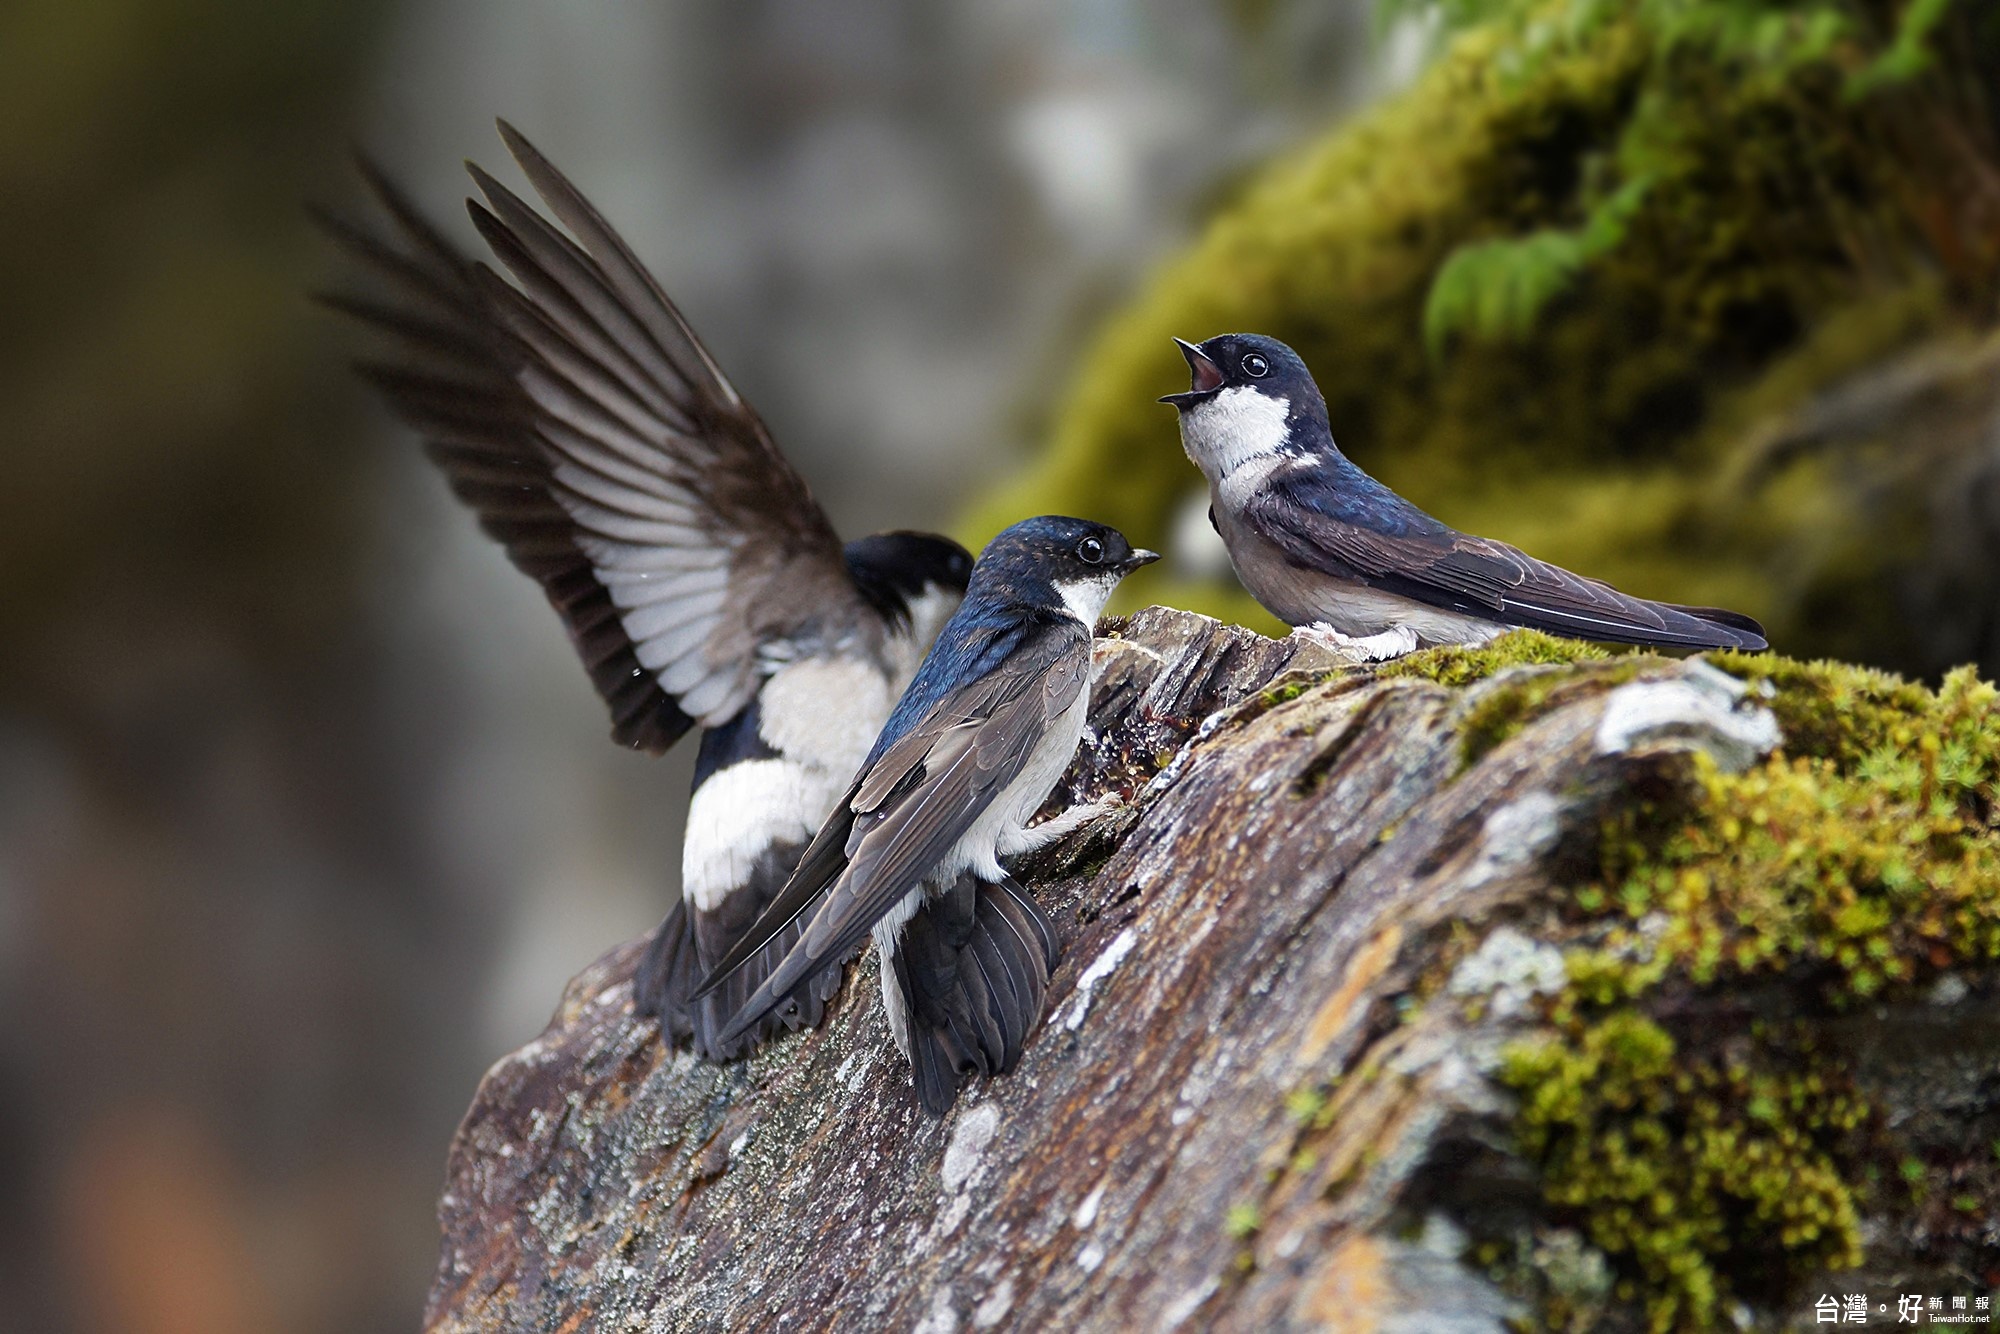 吳曉明主任以嶄新的數位攝影裝置，捕捉他所看到絢麗生動的鳥類世界。